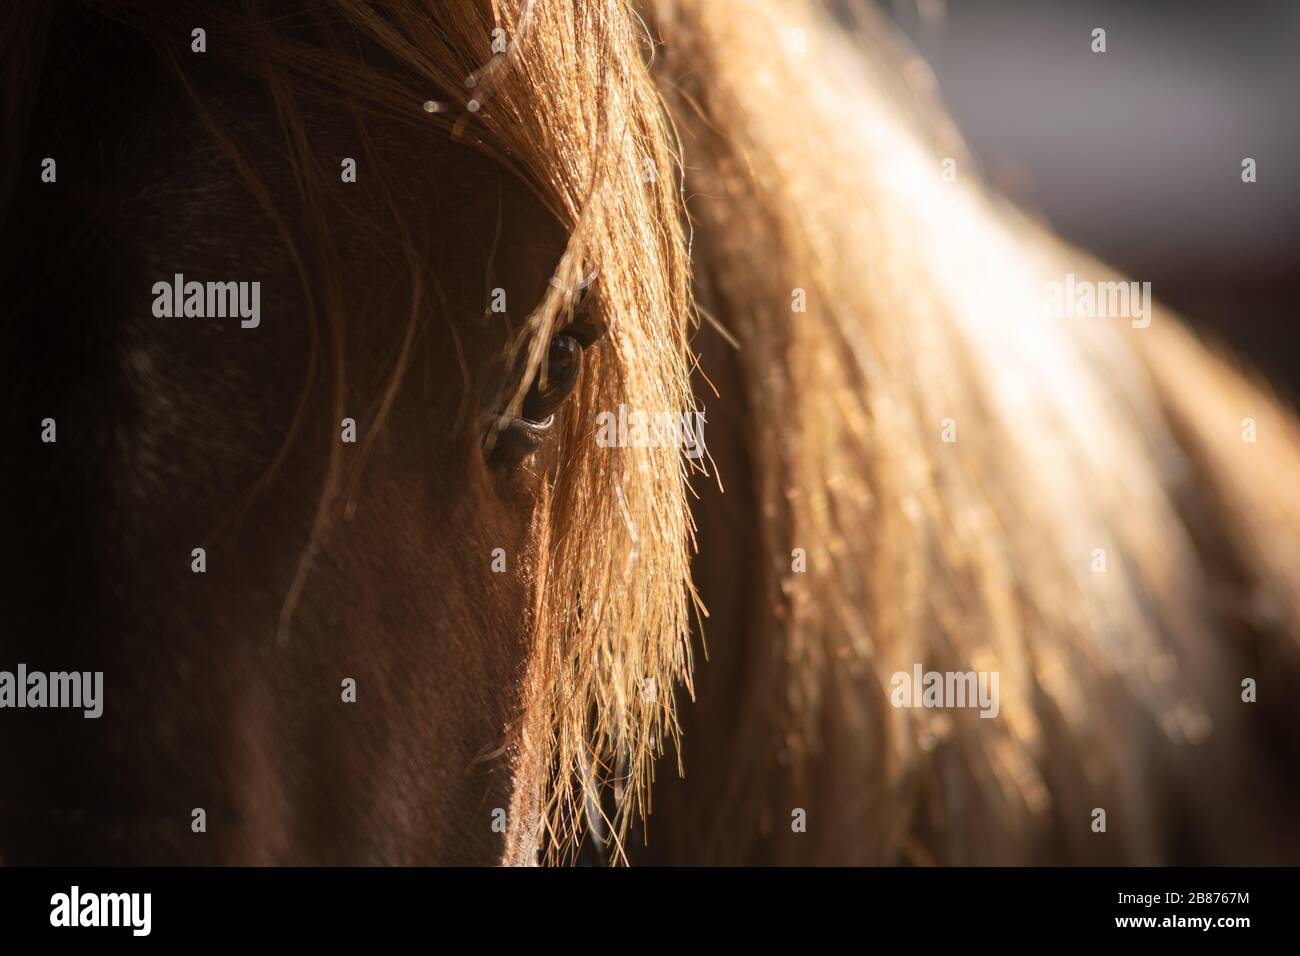 Hintergrundbeleuchtete Nahaufnahme des Auges eines spanischen Kastanienpferdes im stabilen Korridor Stockfoto